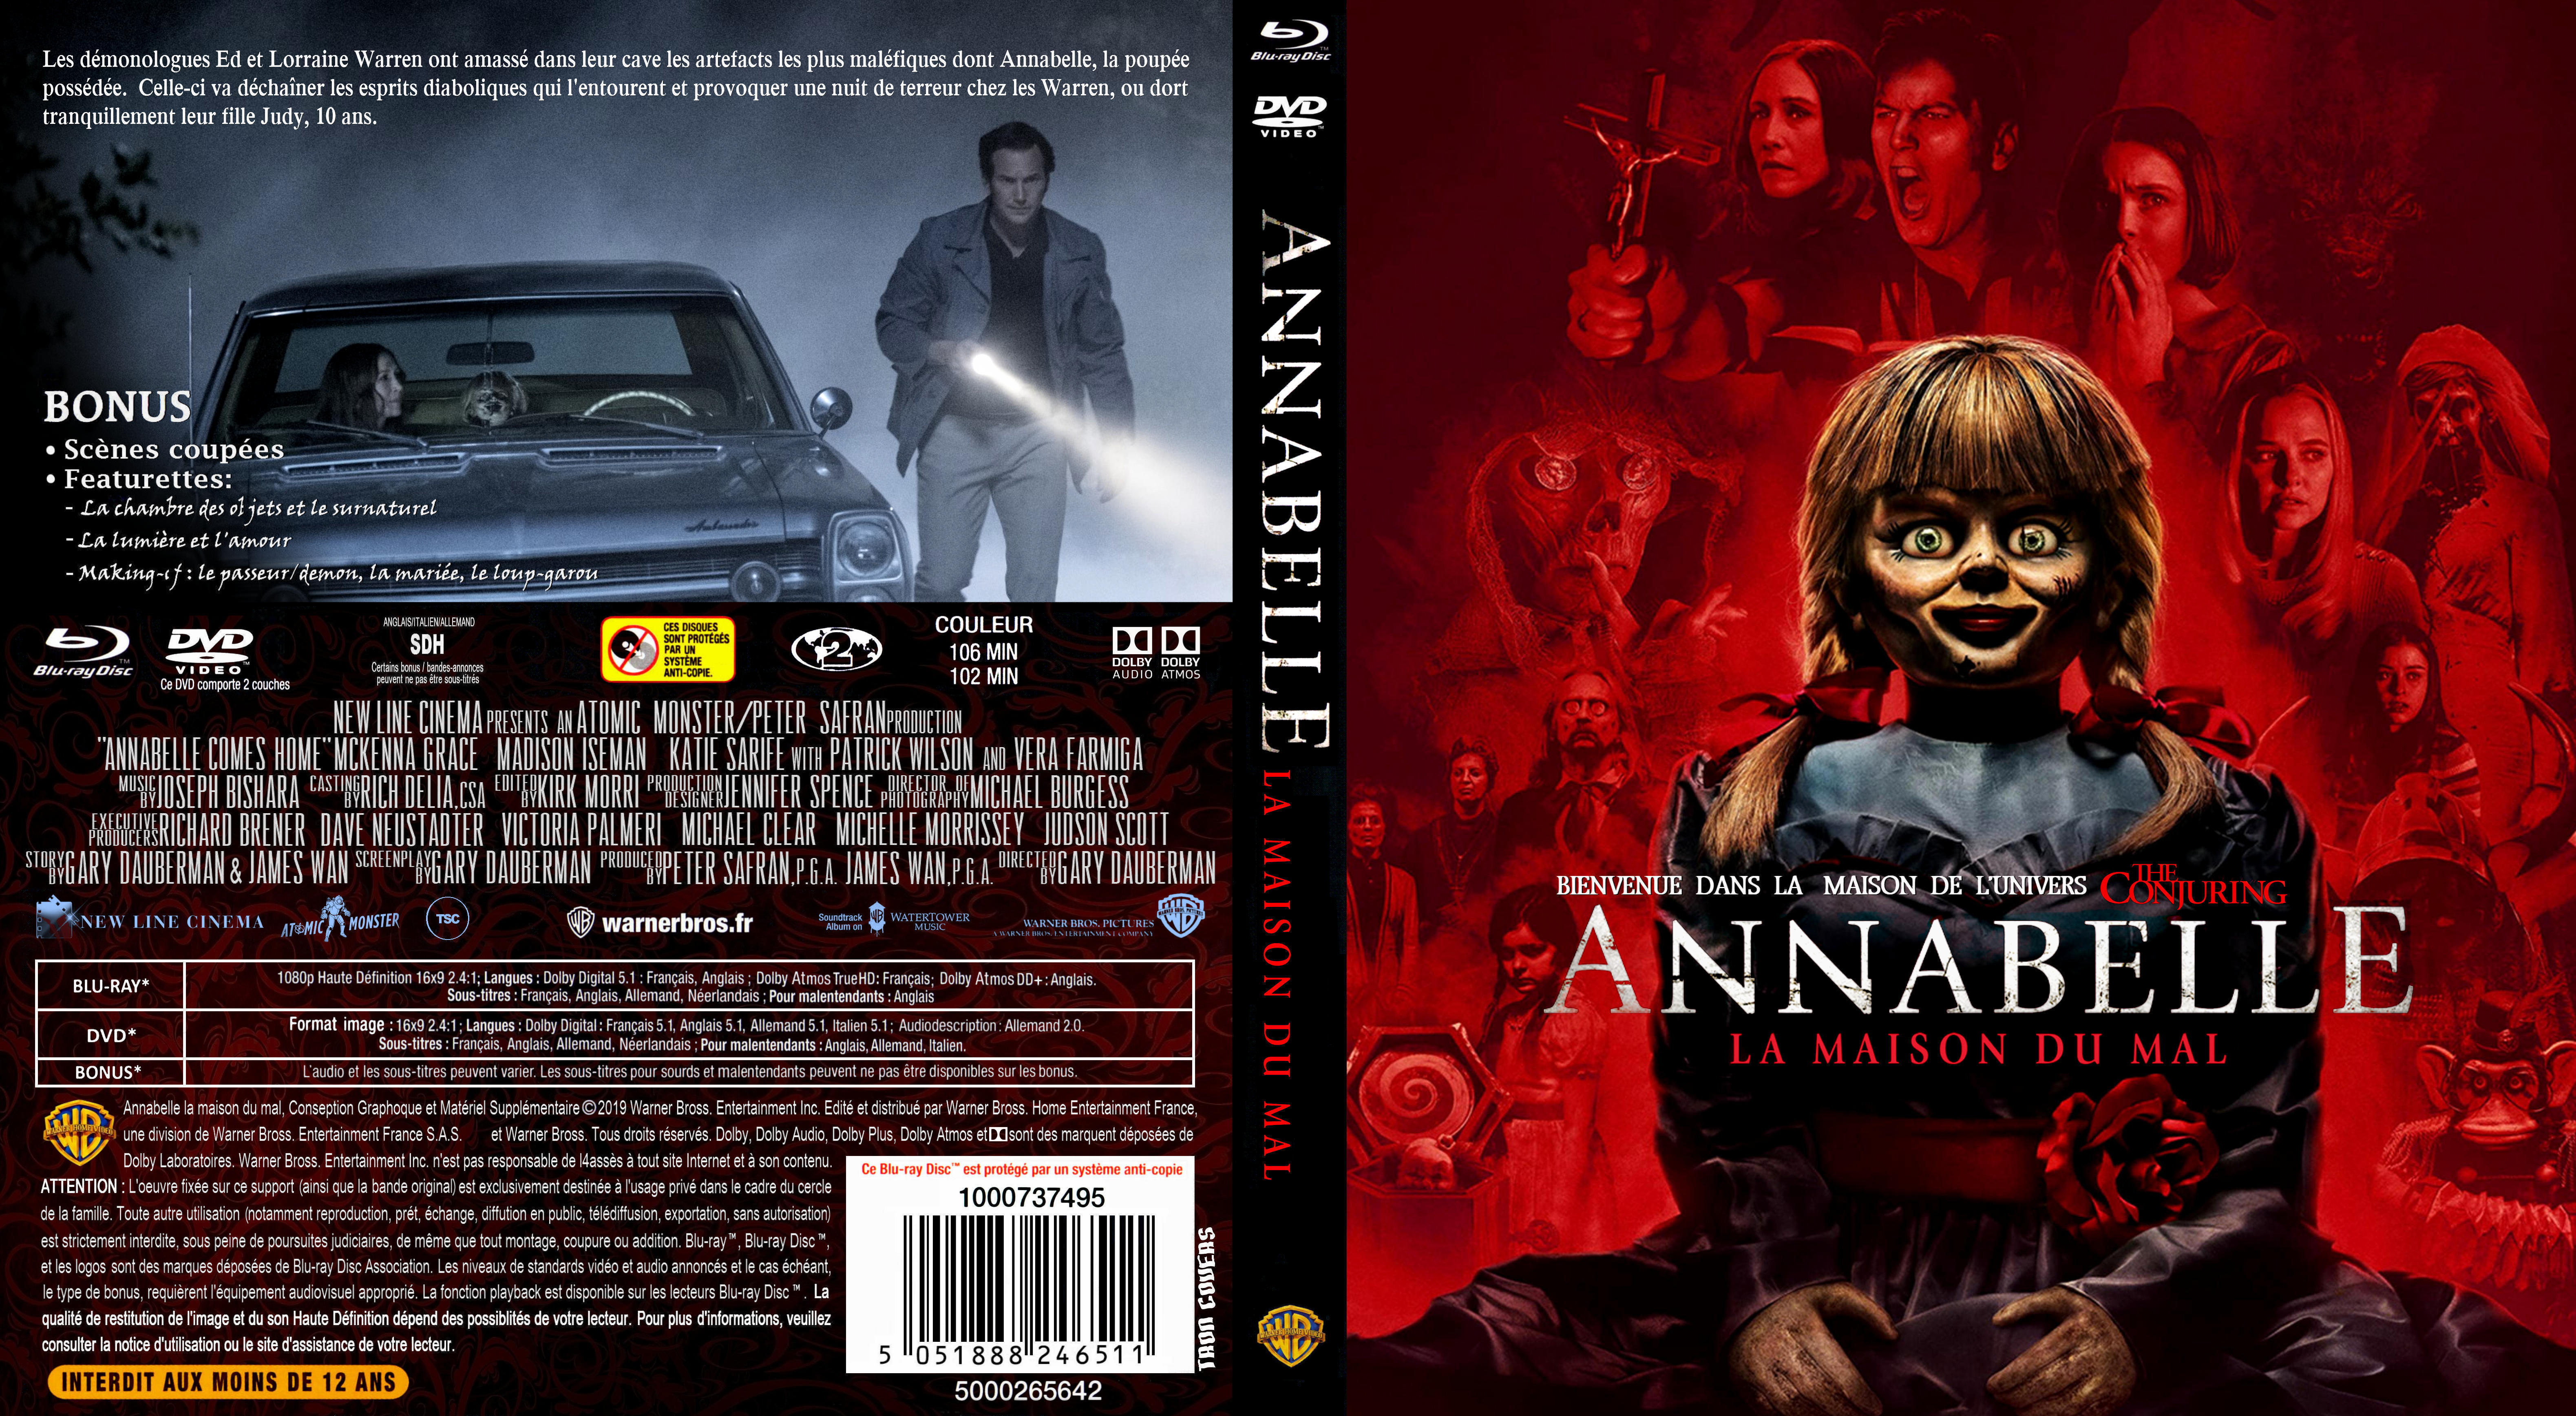 Jaquette DVD Annabelle 3 La maison du mal custom (BLU-RAY) v2